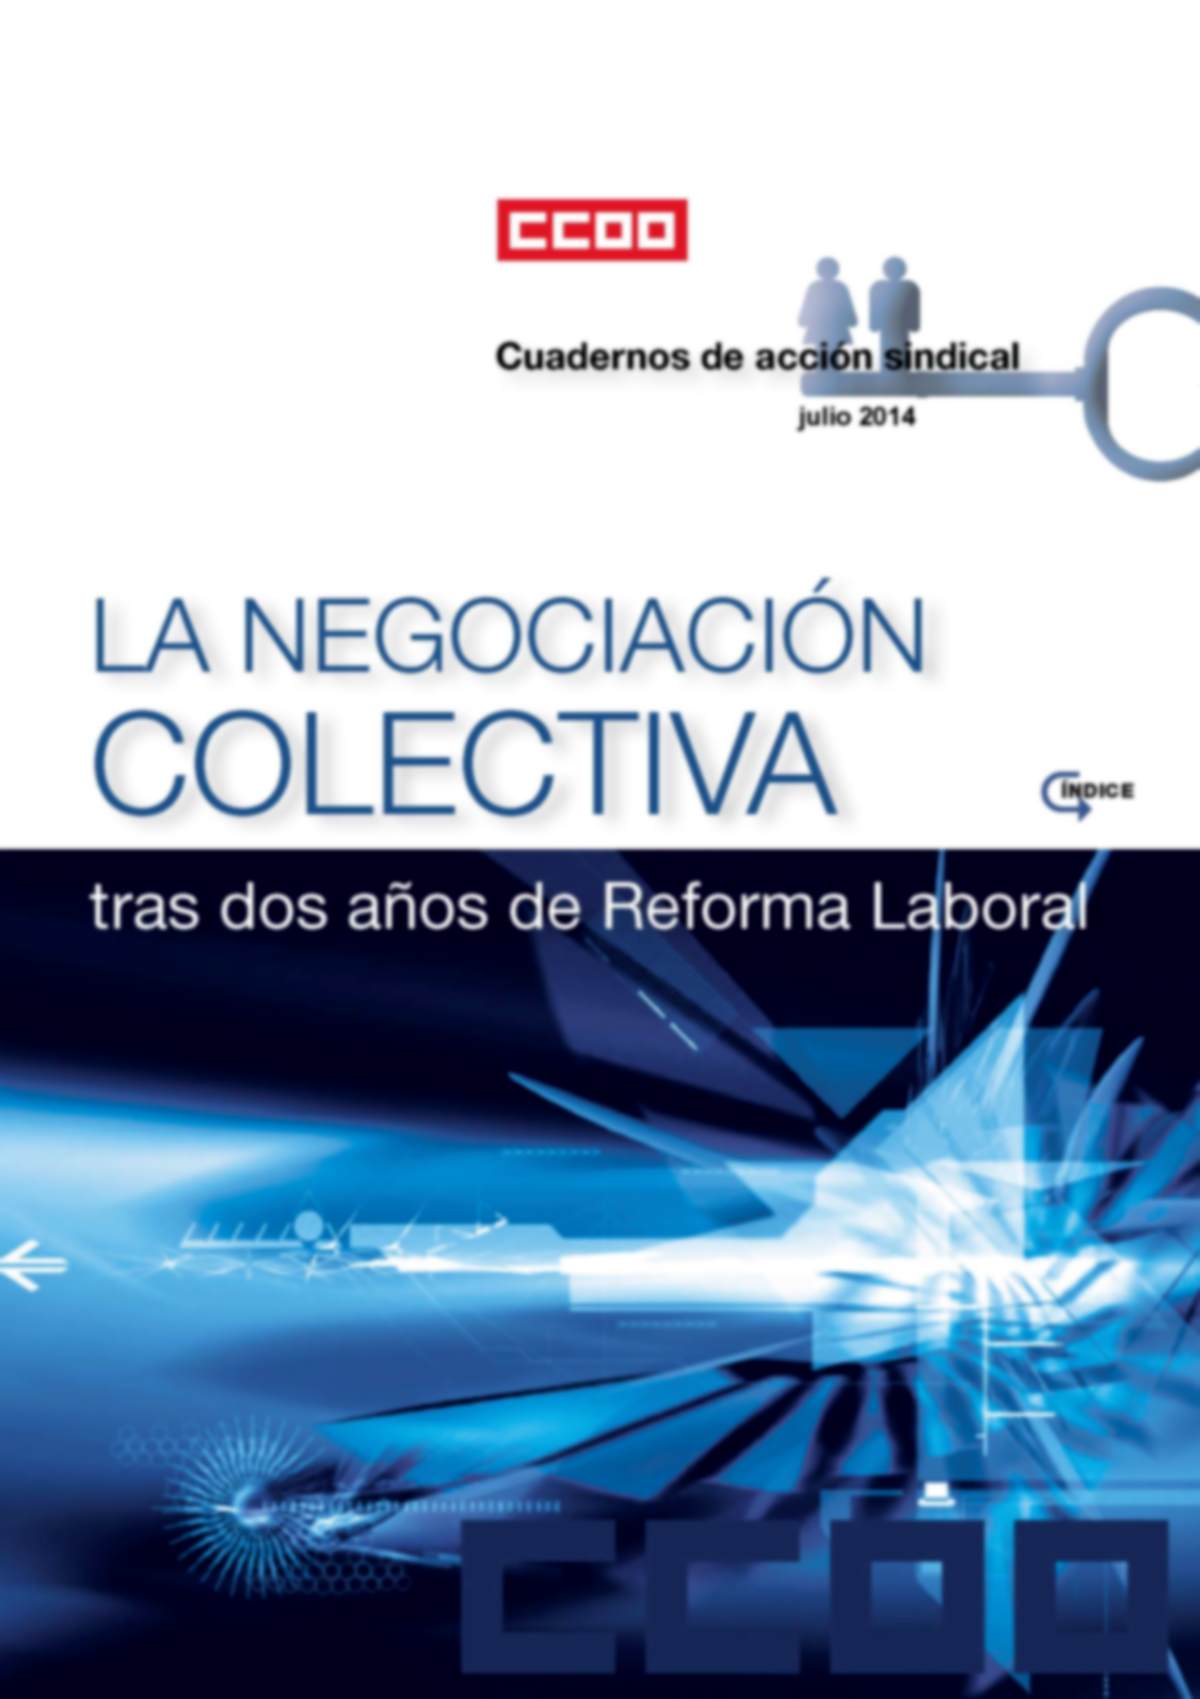 La Negociación Colectiva tras dos años de Reforma Laboral